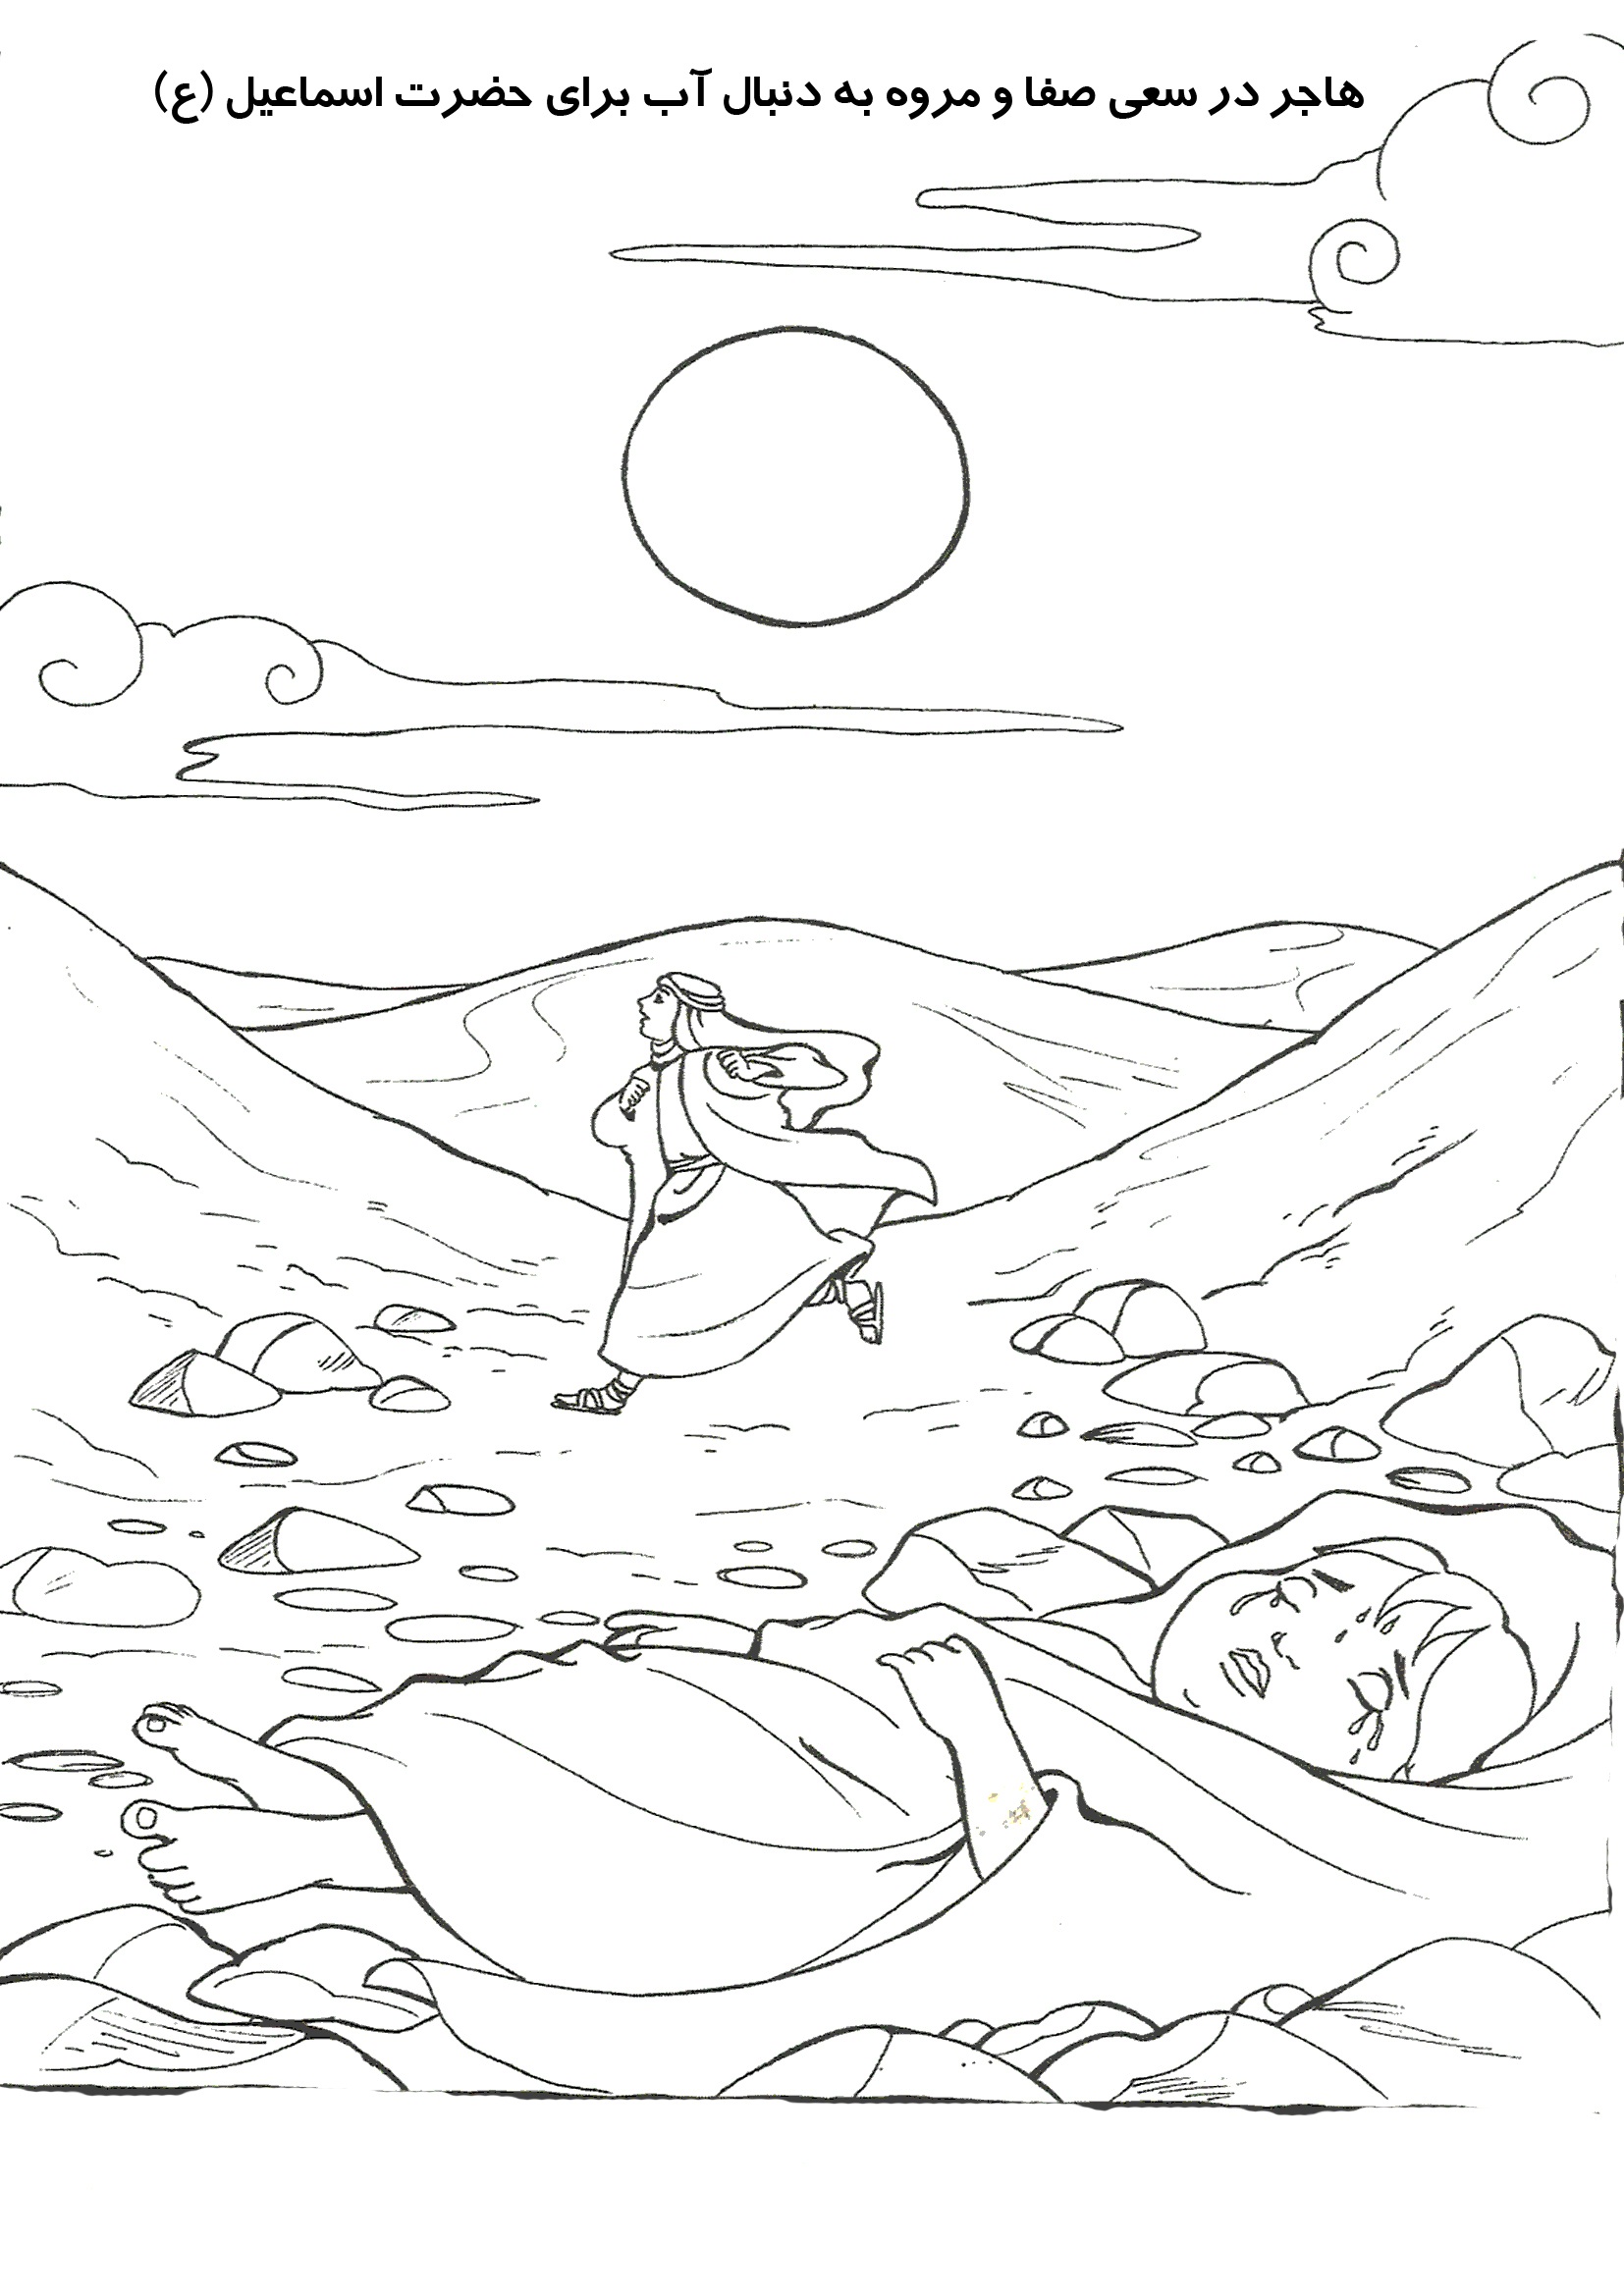 نقاشی کودکانه در مورد چشمه زمزم